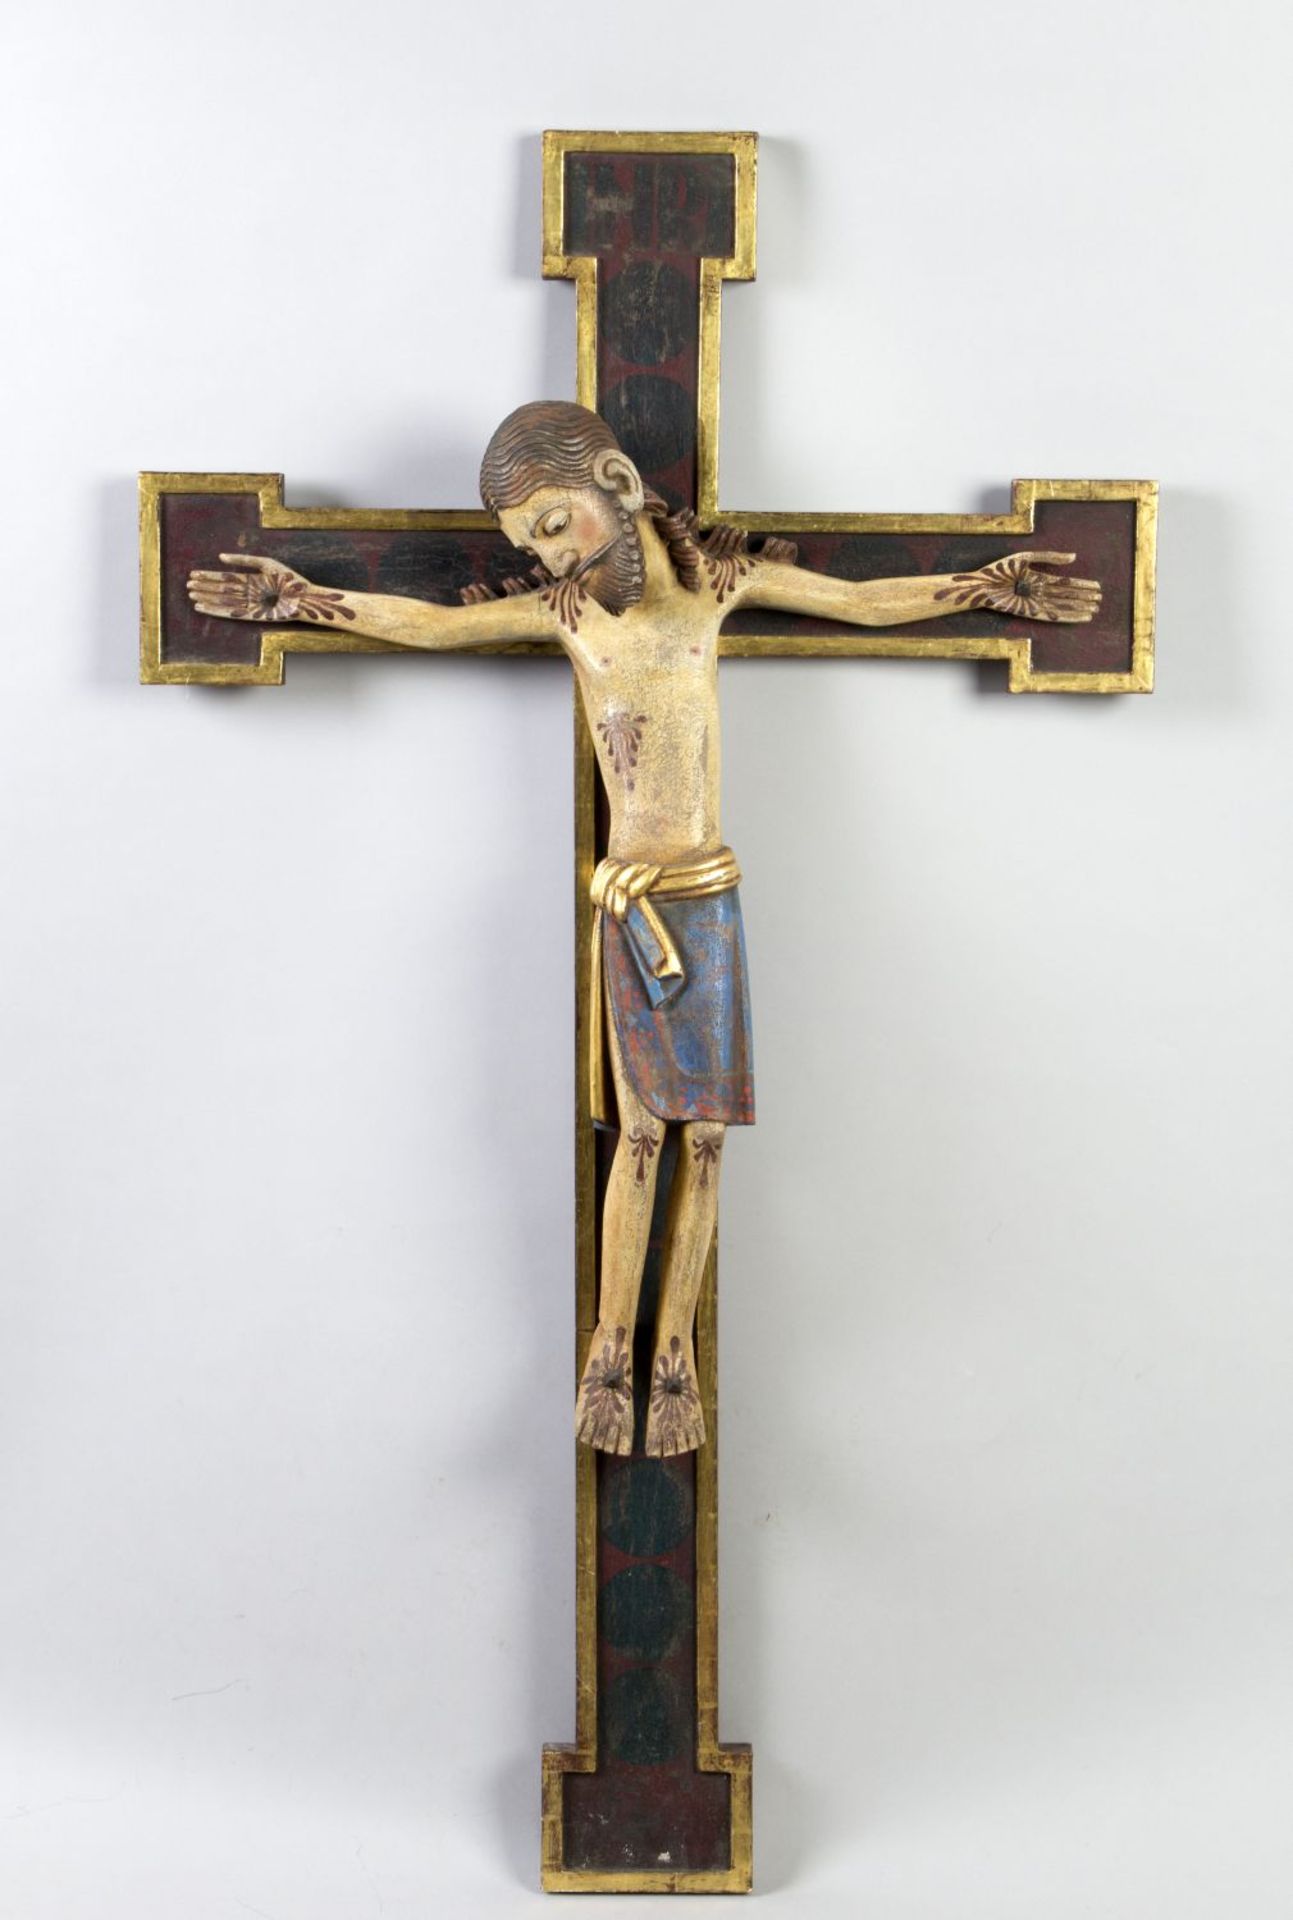 Kruzifix im romanischen StilHolz, geschnitzt. Farb- und Goldfassung. Darstellung des Gekreuzigten im